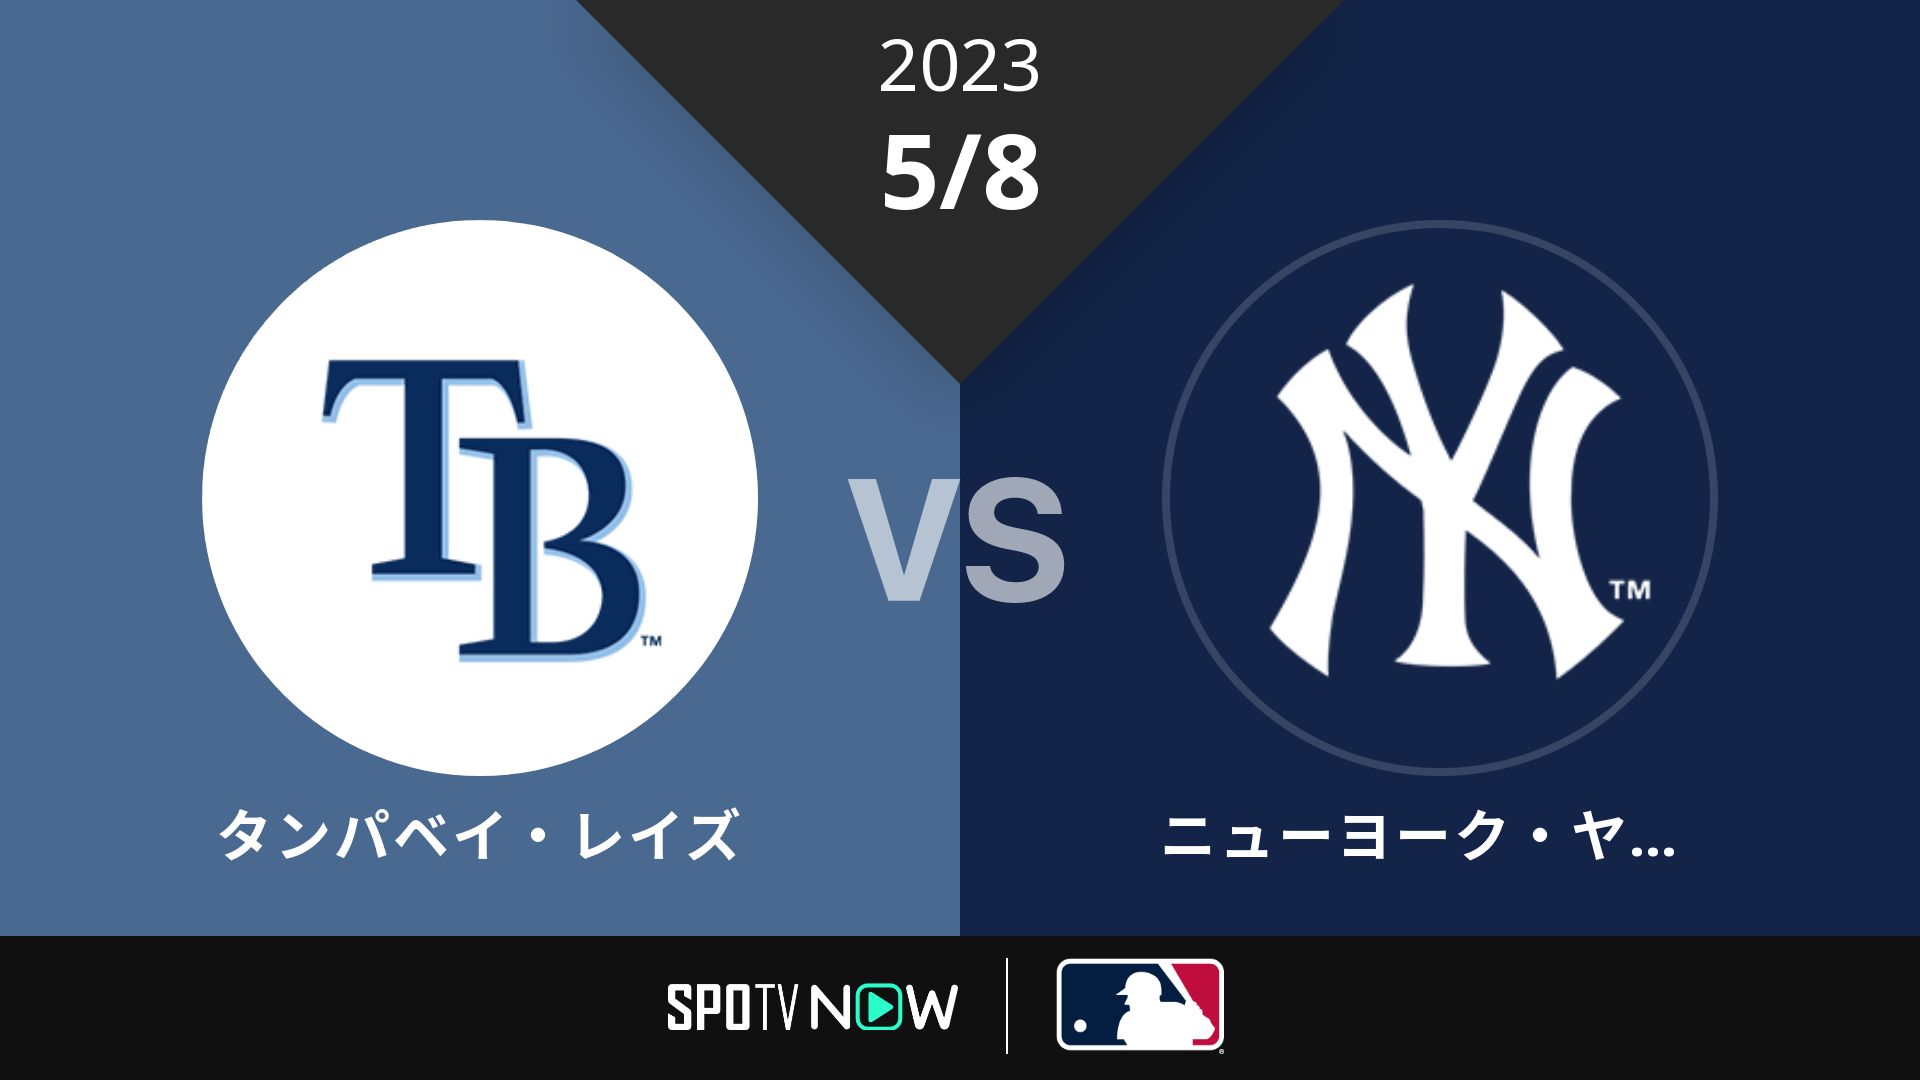 2023/5/8 レイズ vs ヤンキース [MLB]